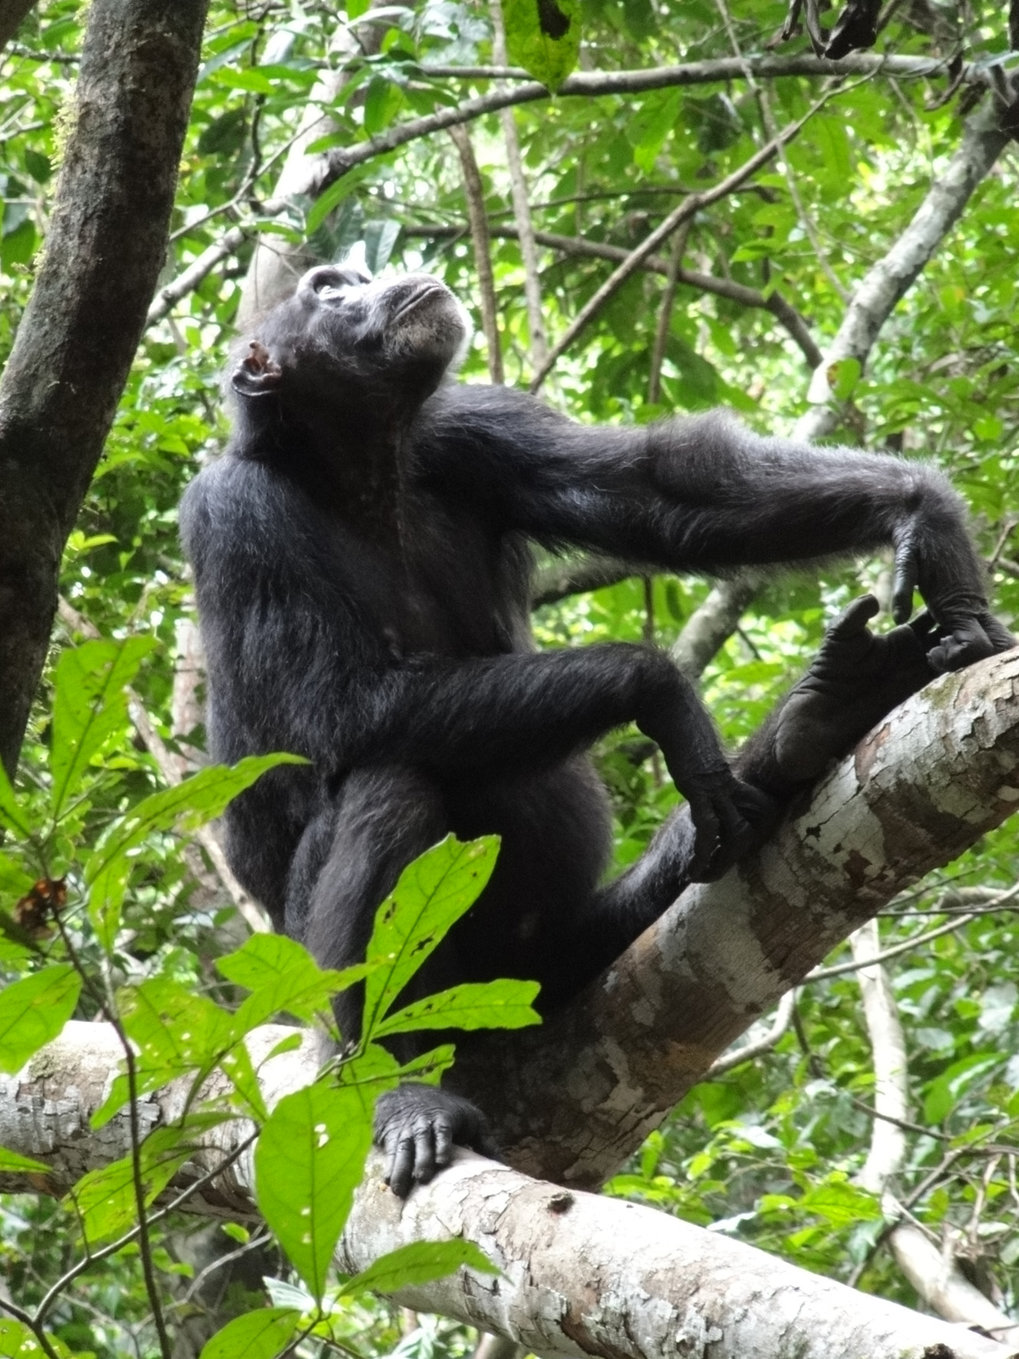 ancestral chimpanzee diet